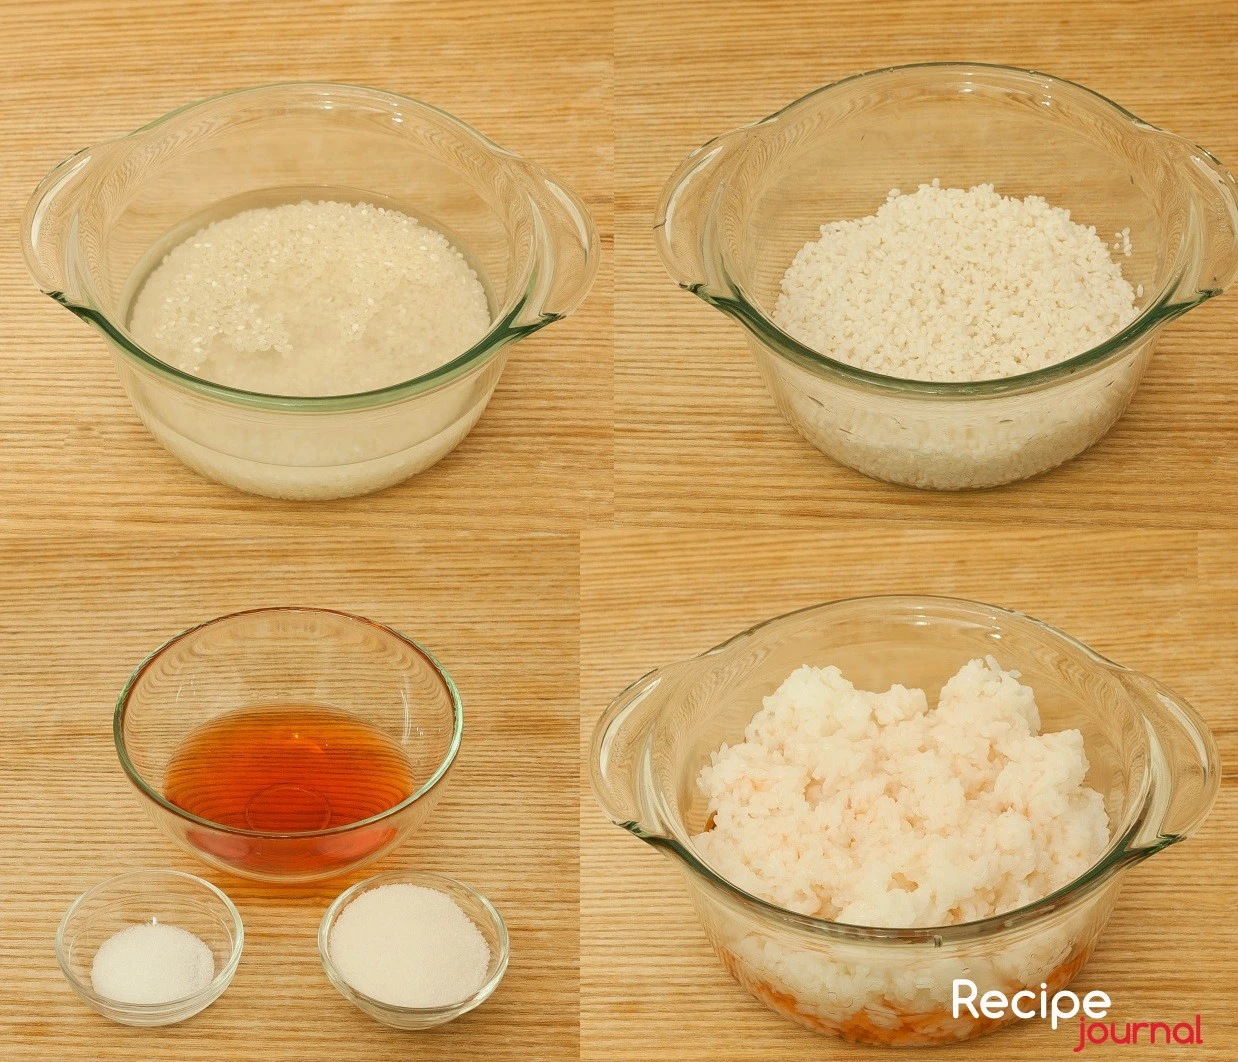 Для торта надо использовать рис клейких сортов, есть такой специально для суши. Хорошо промыть крупу  до прозрачности воды, залить водой чтобы покрыло и дать постоять 30 минут. Рис набухнет и увеличится в размере. Отварить рис до готовности, залив водой примерно на 2 см выше крупы. Готовый рис промывать не надо, откинуть на дуршлаг и перемешать с заранее подготовленным рисовым уксусом. Уксус смешать с с 1 ч.л. соли и 2 ст.л. сахара.